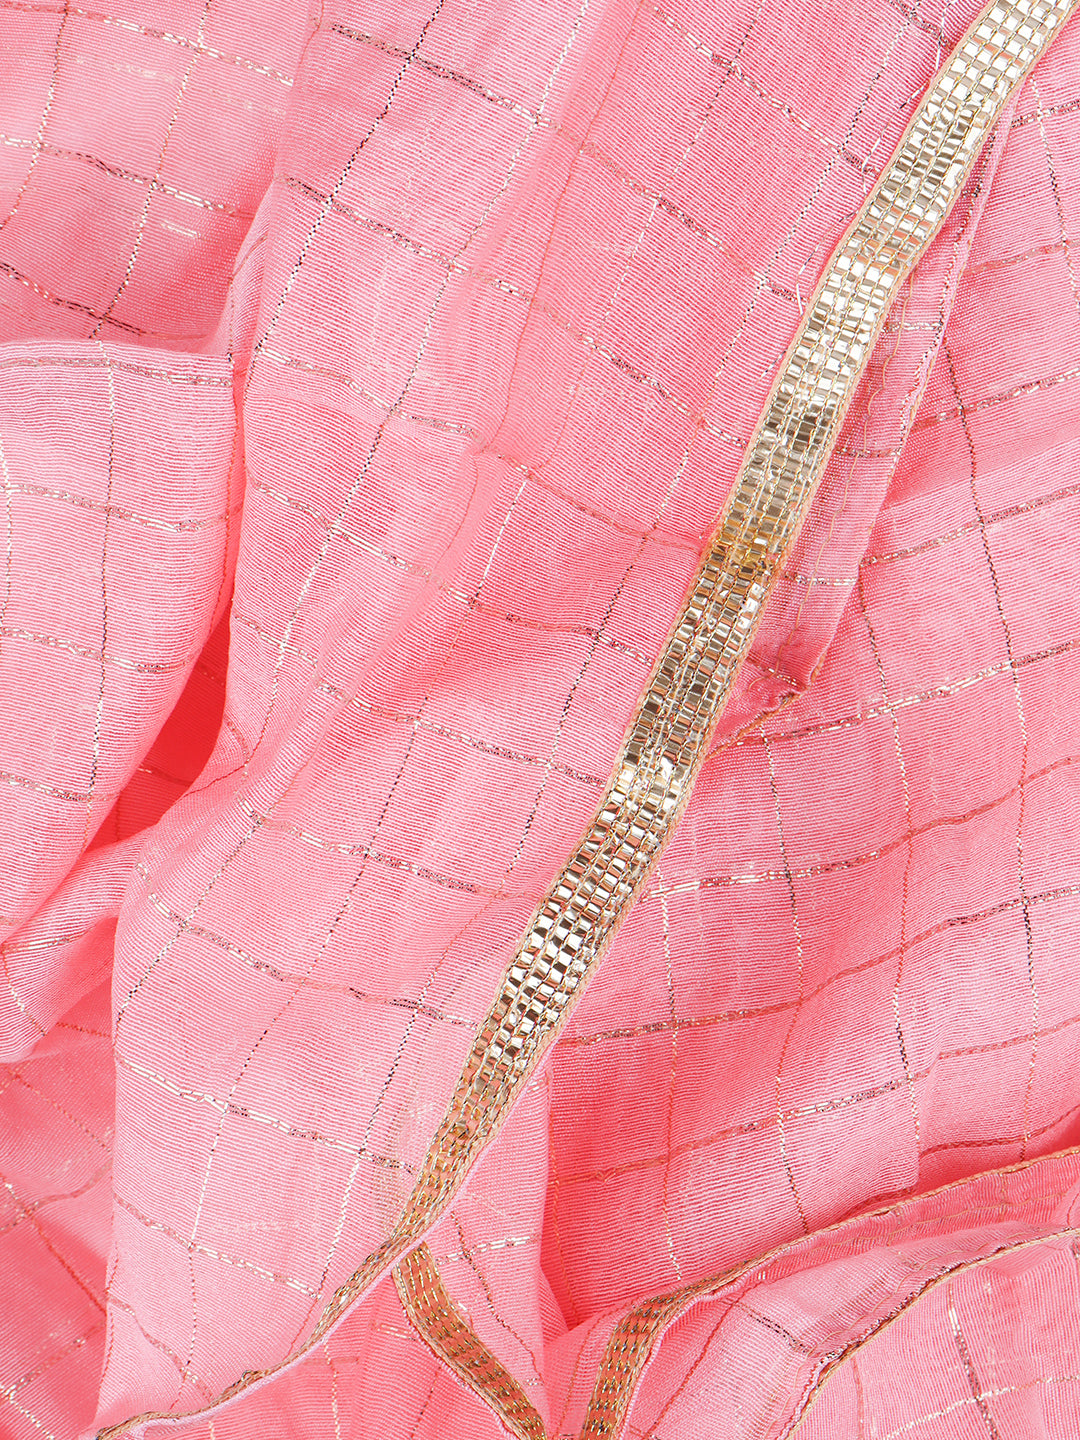 Women Cotton Rich Dress Material Pink -DM148